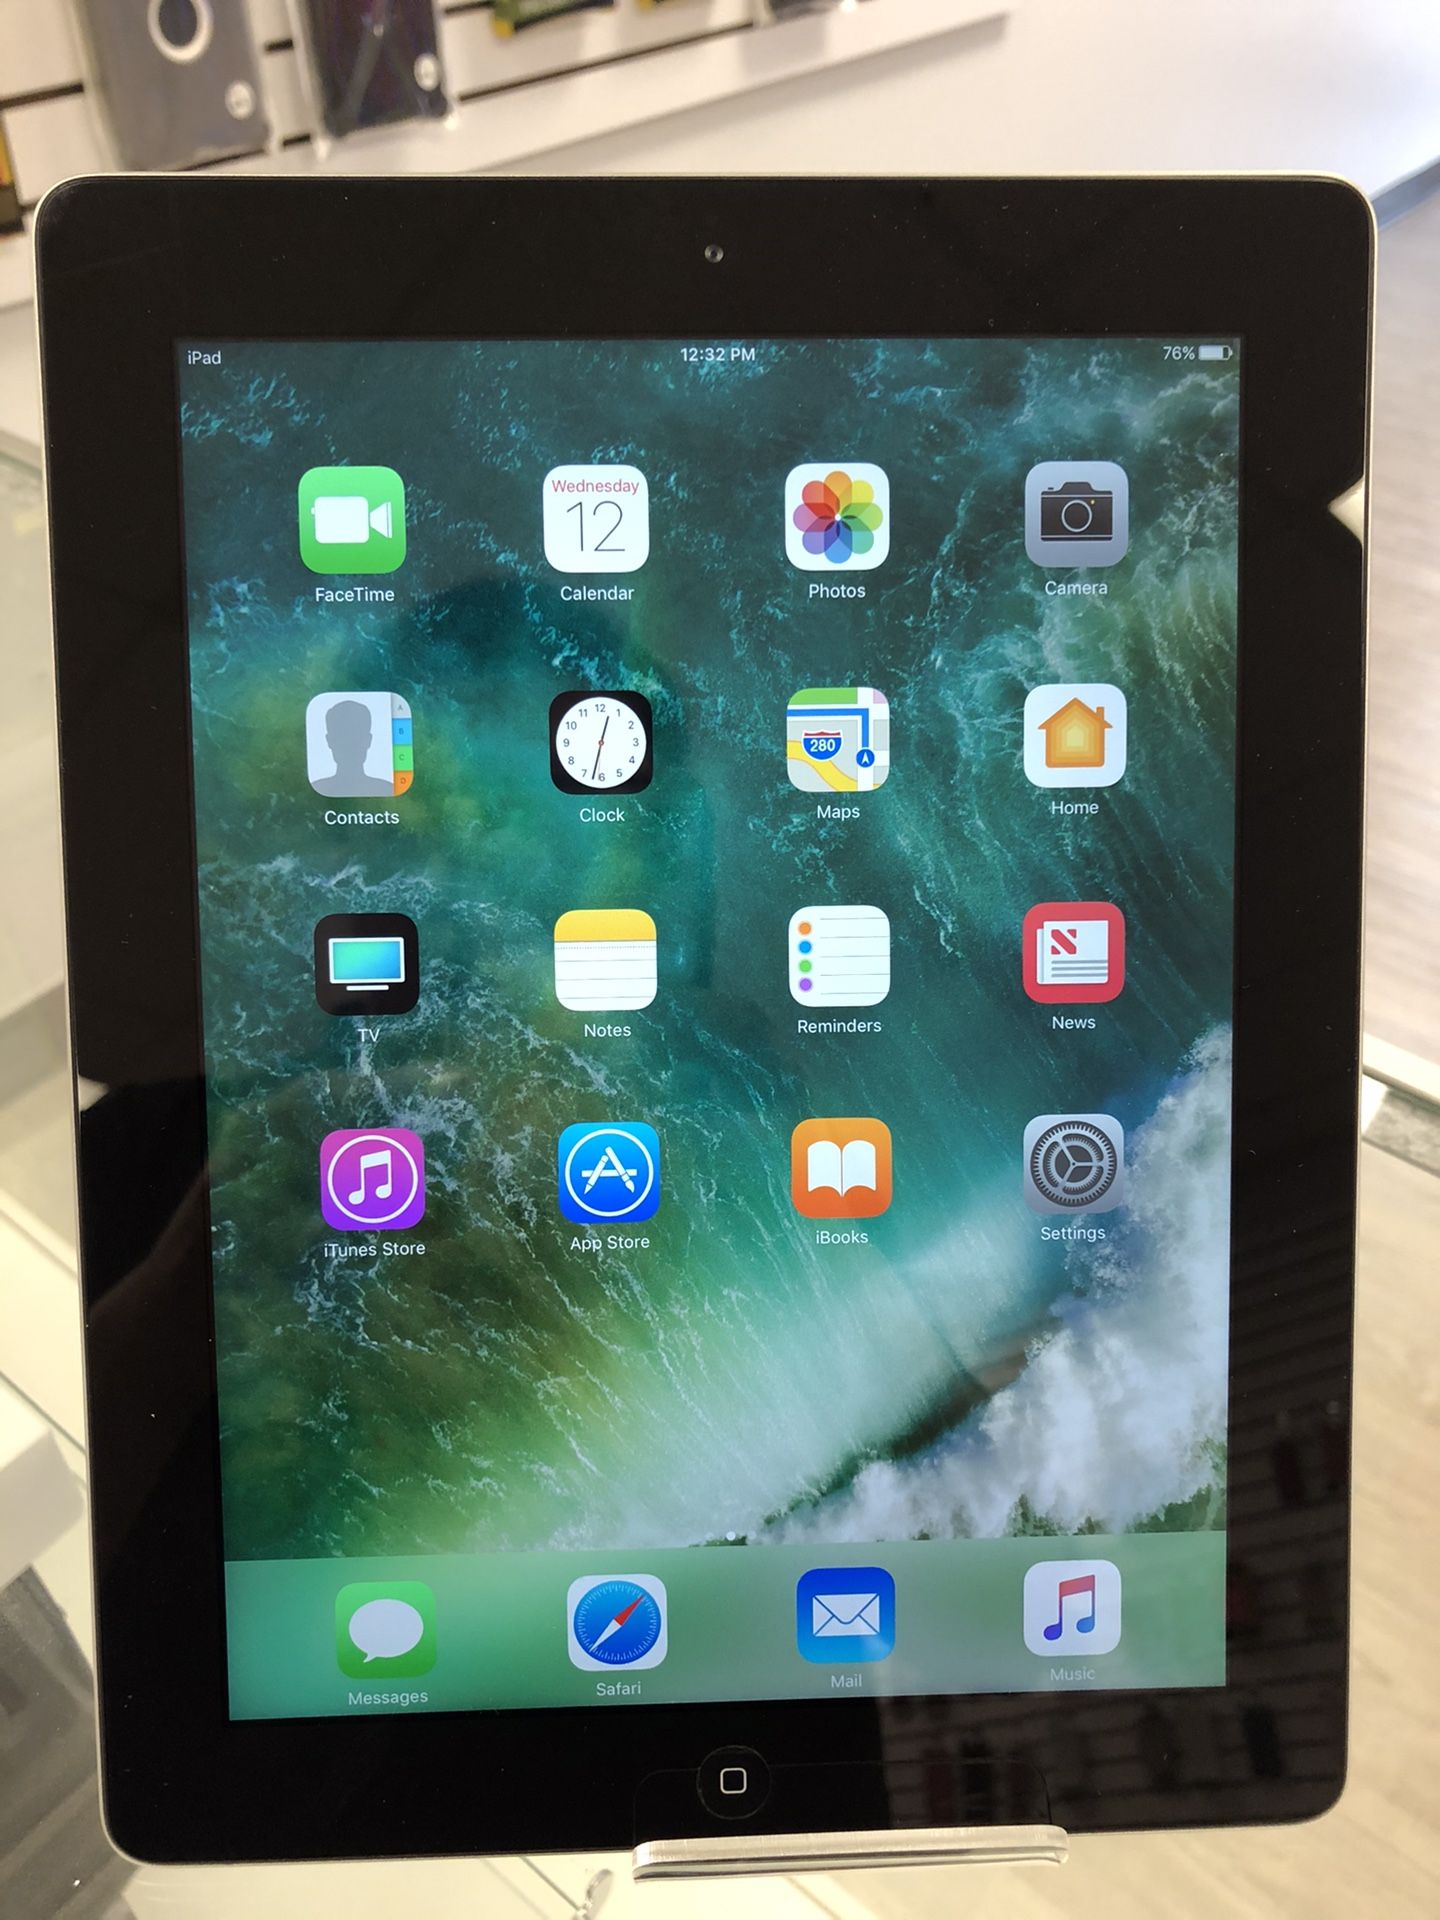 Apple iPad 2 black 16GB unlocked WiFi